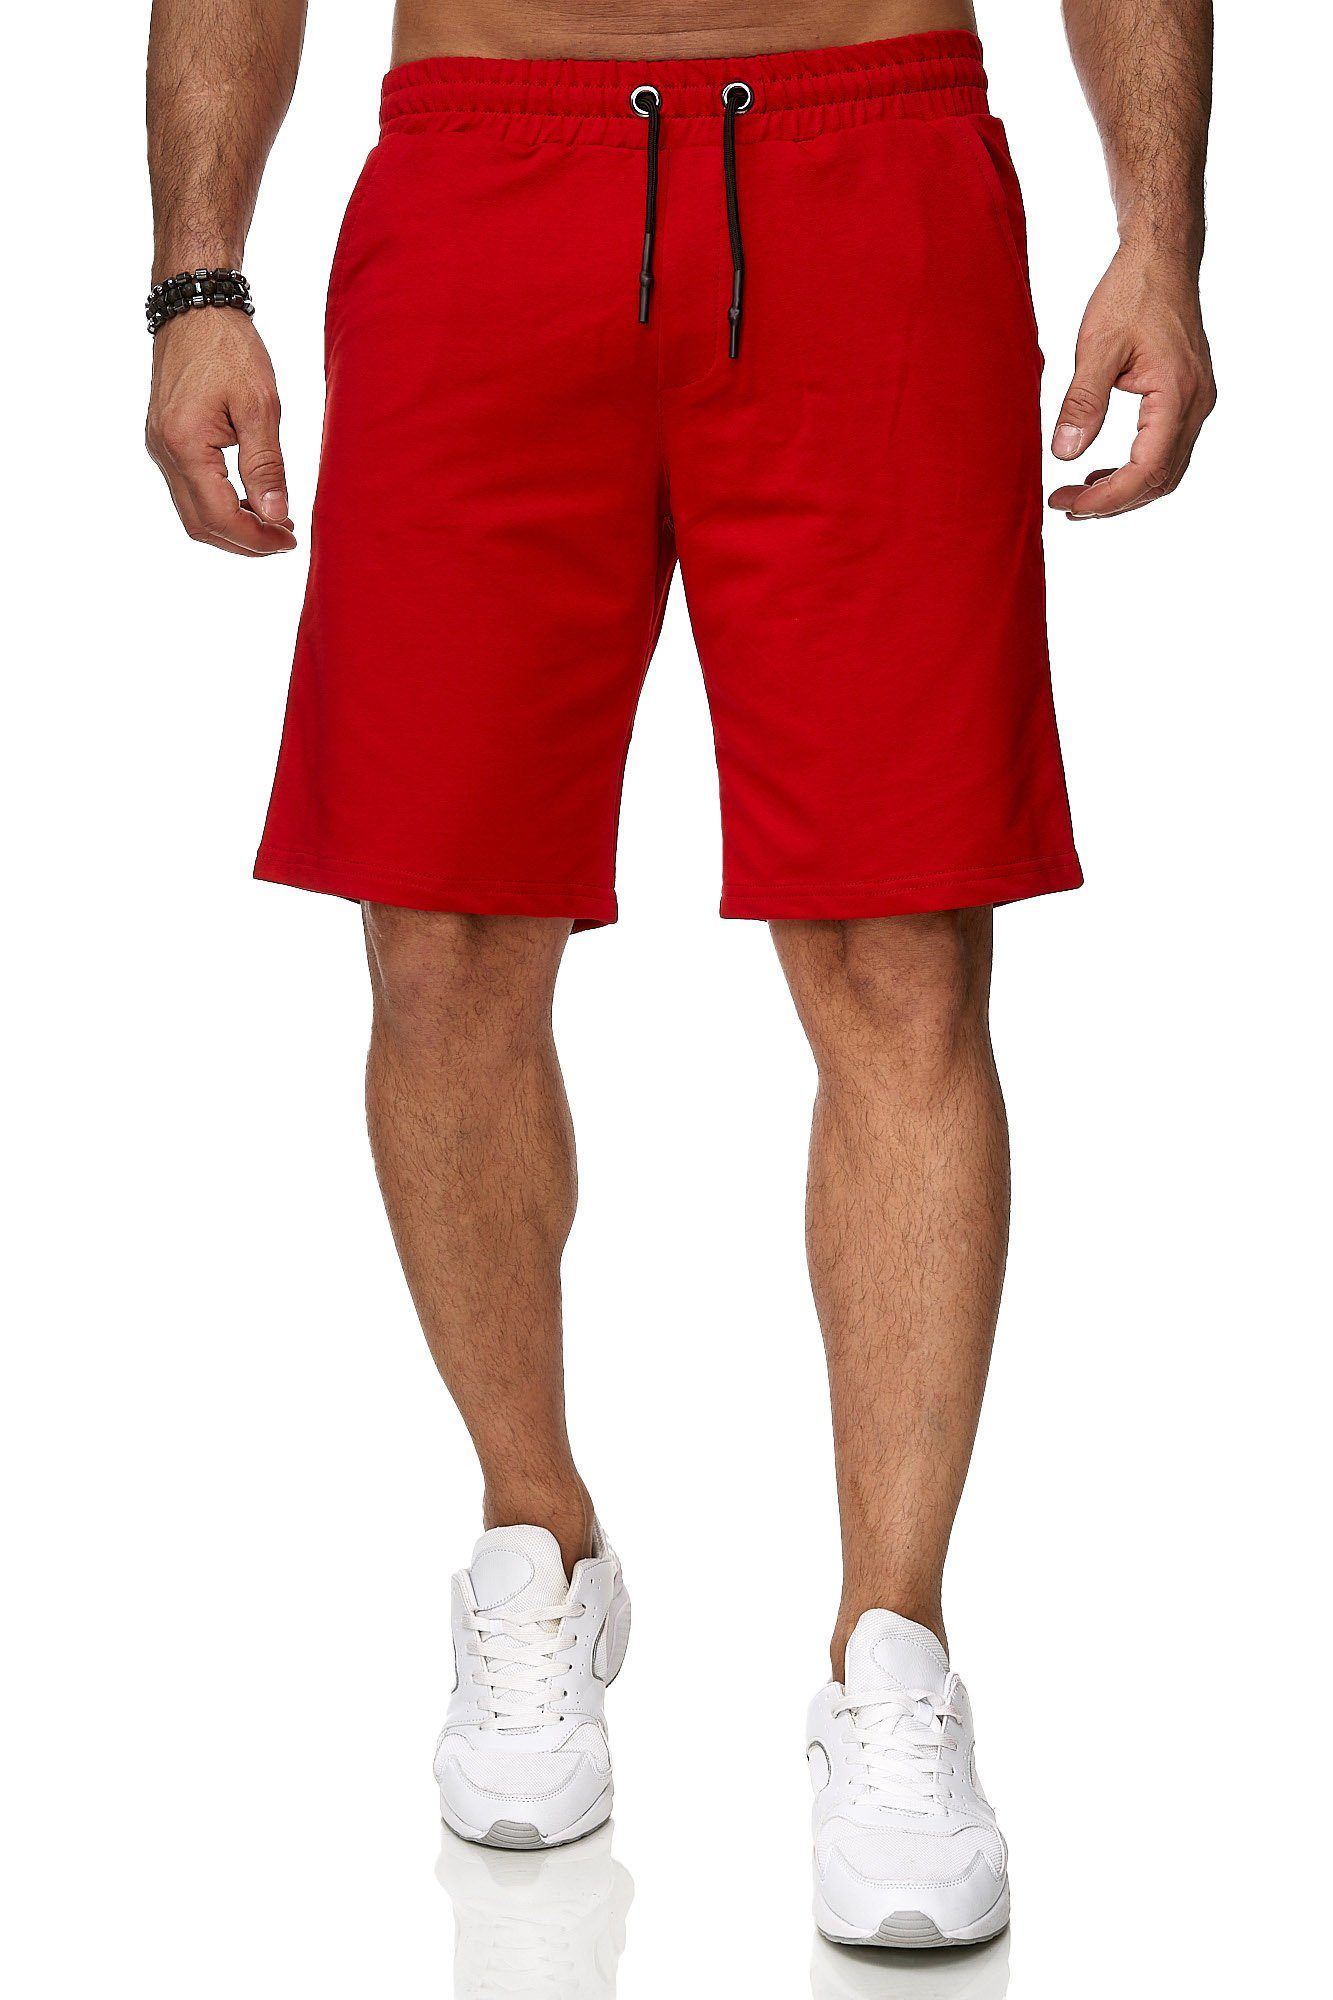 Rote Shorts online kaufen | OTTO